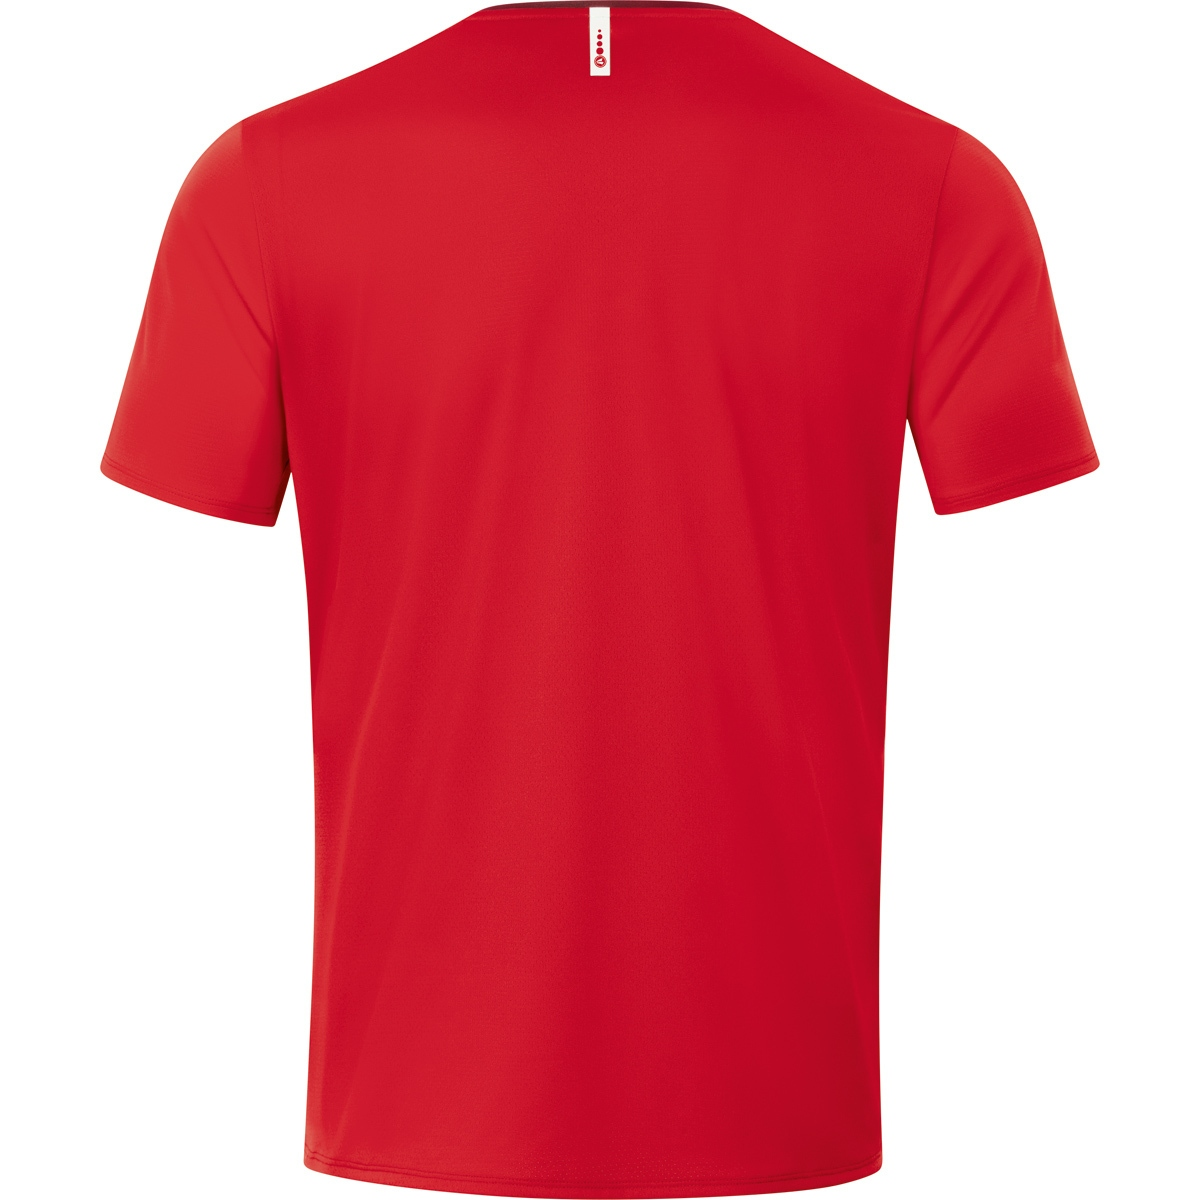 JAKO T-Shirt Champ 2.0 rot/weinrot, 116, Kinder, 6120 Gr